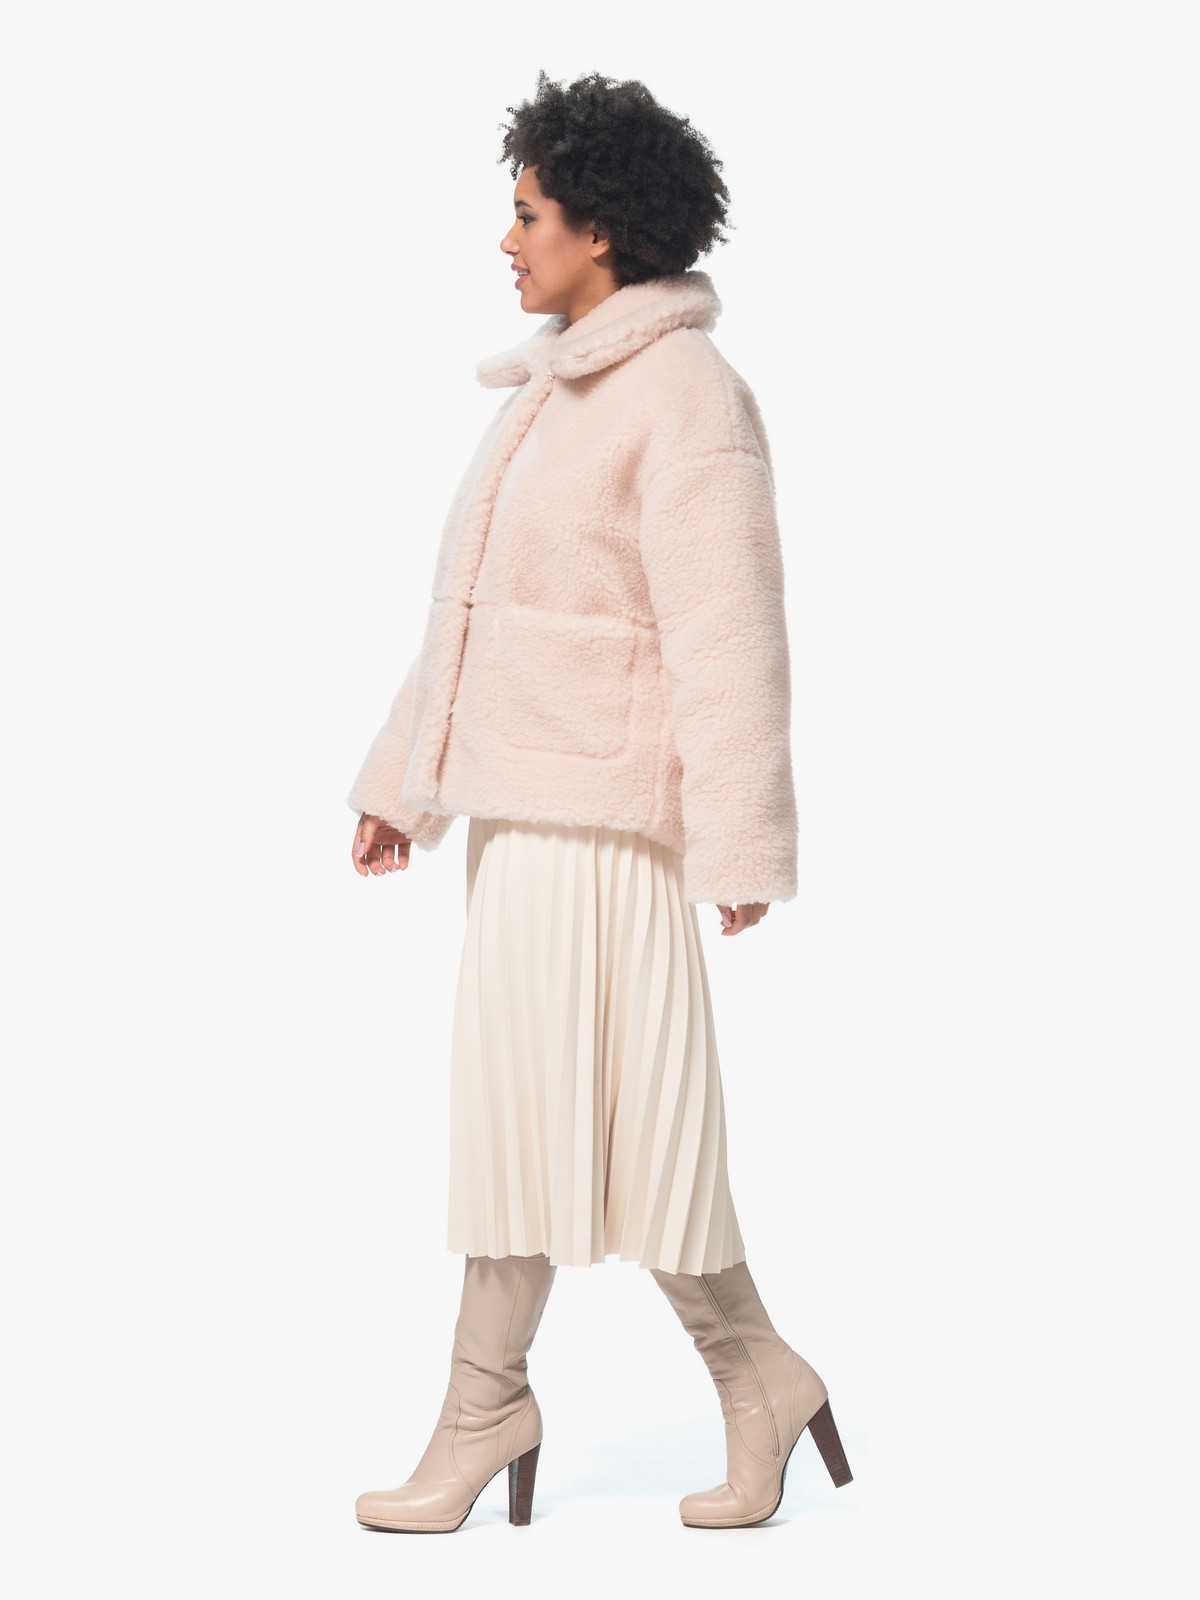 Женская Шуба из шерсти натуральная Розовая Модель Эдем короткая | Фото №4